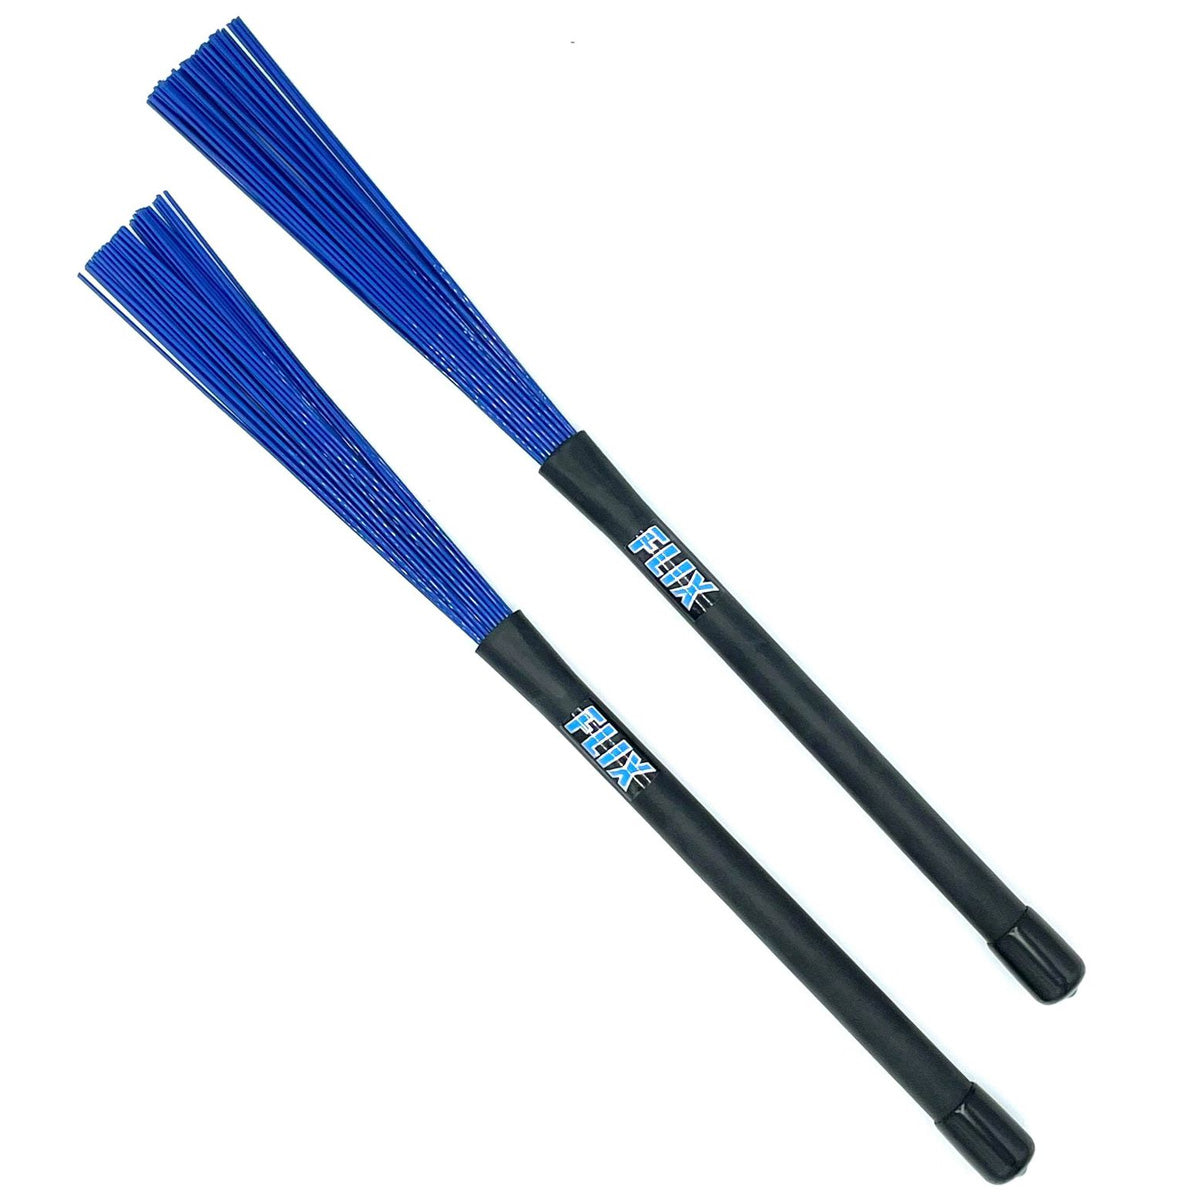 Flix XL Jazz Brushes - Dark Blue